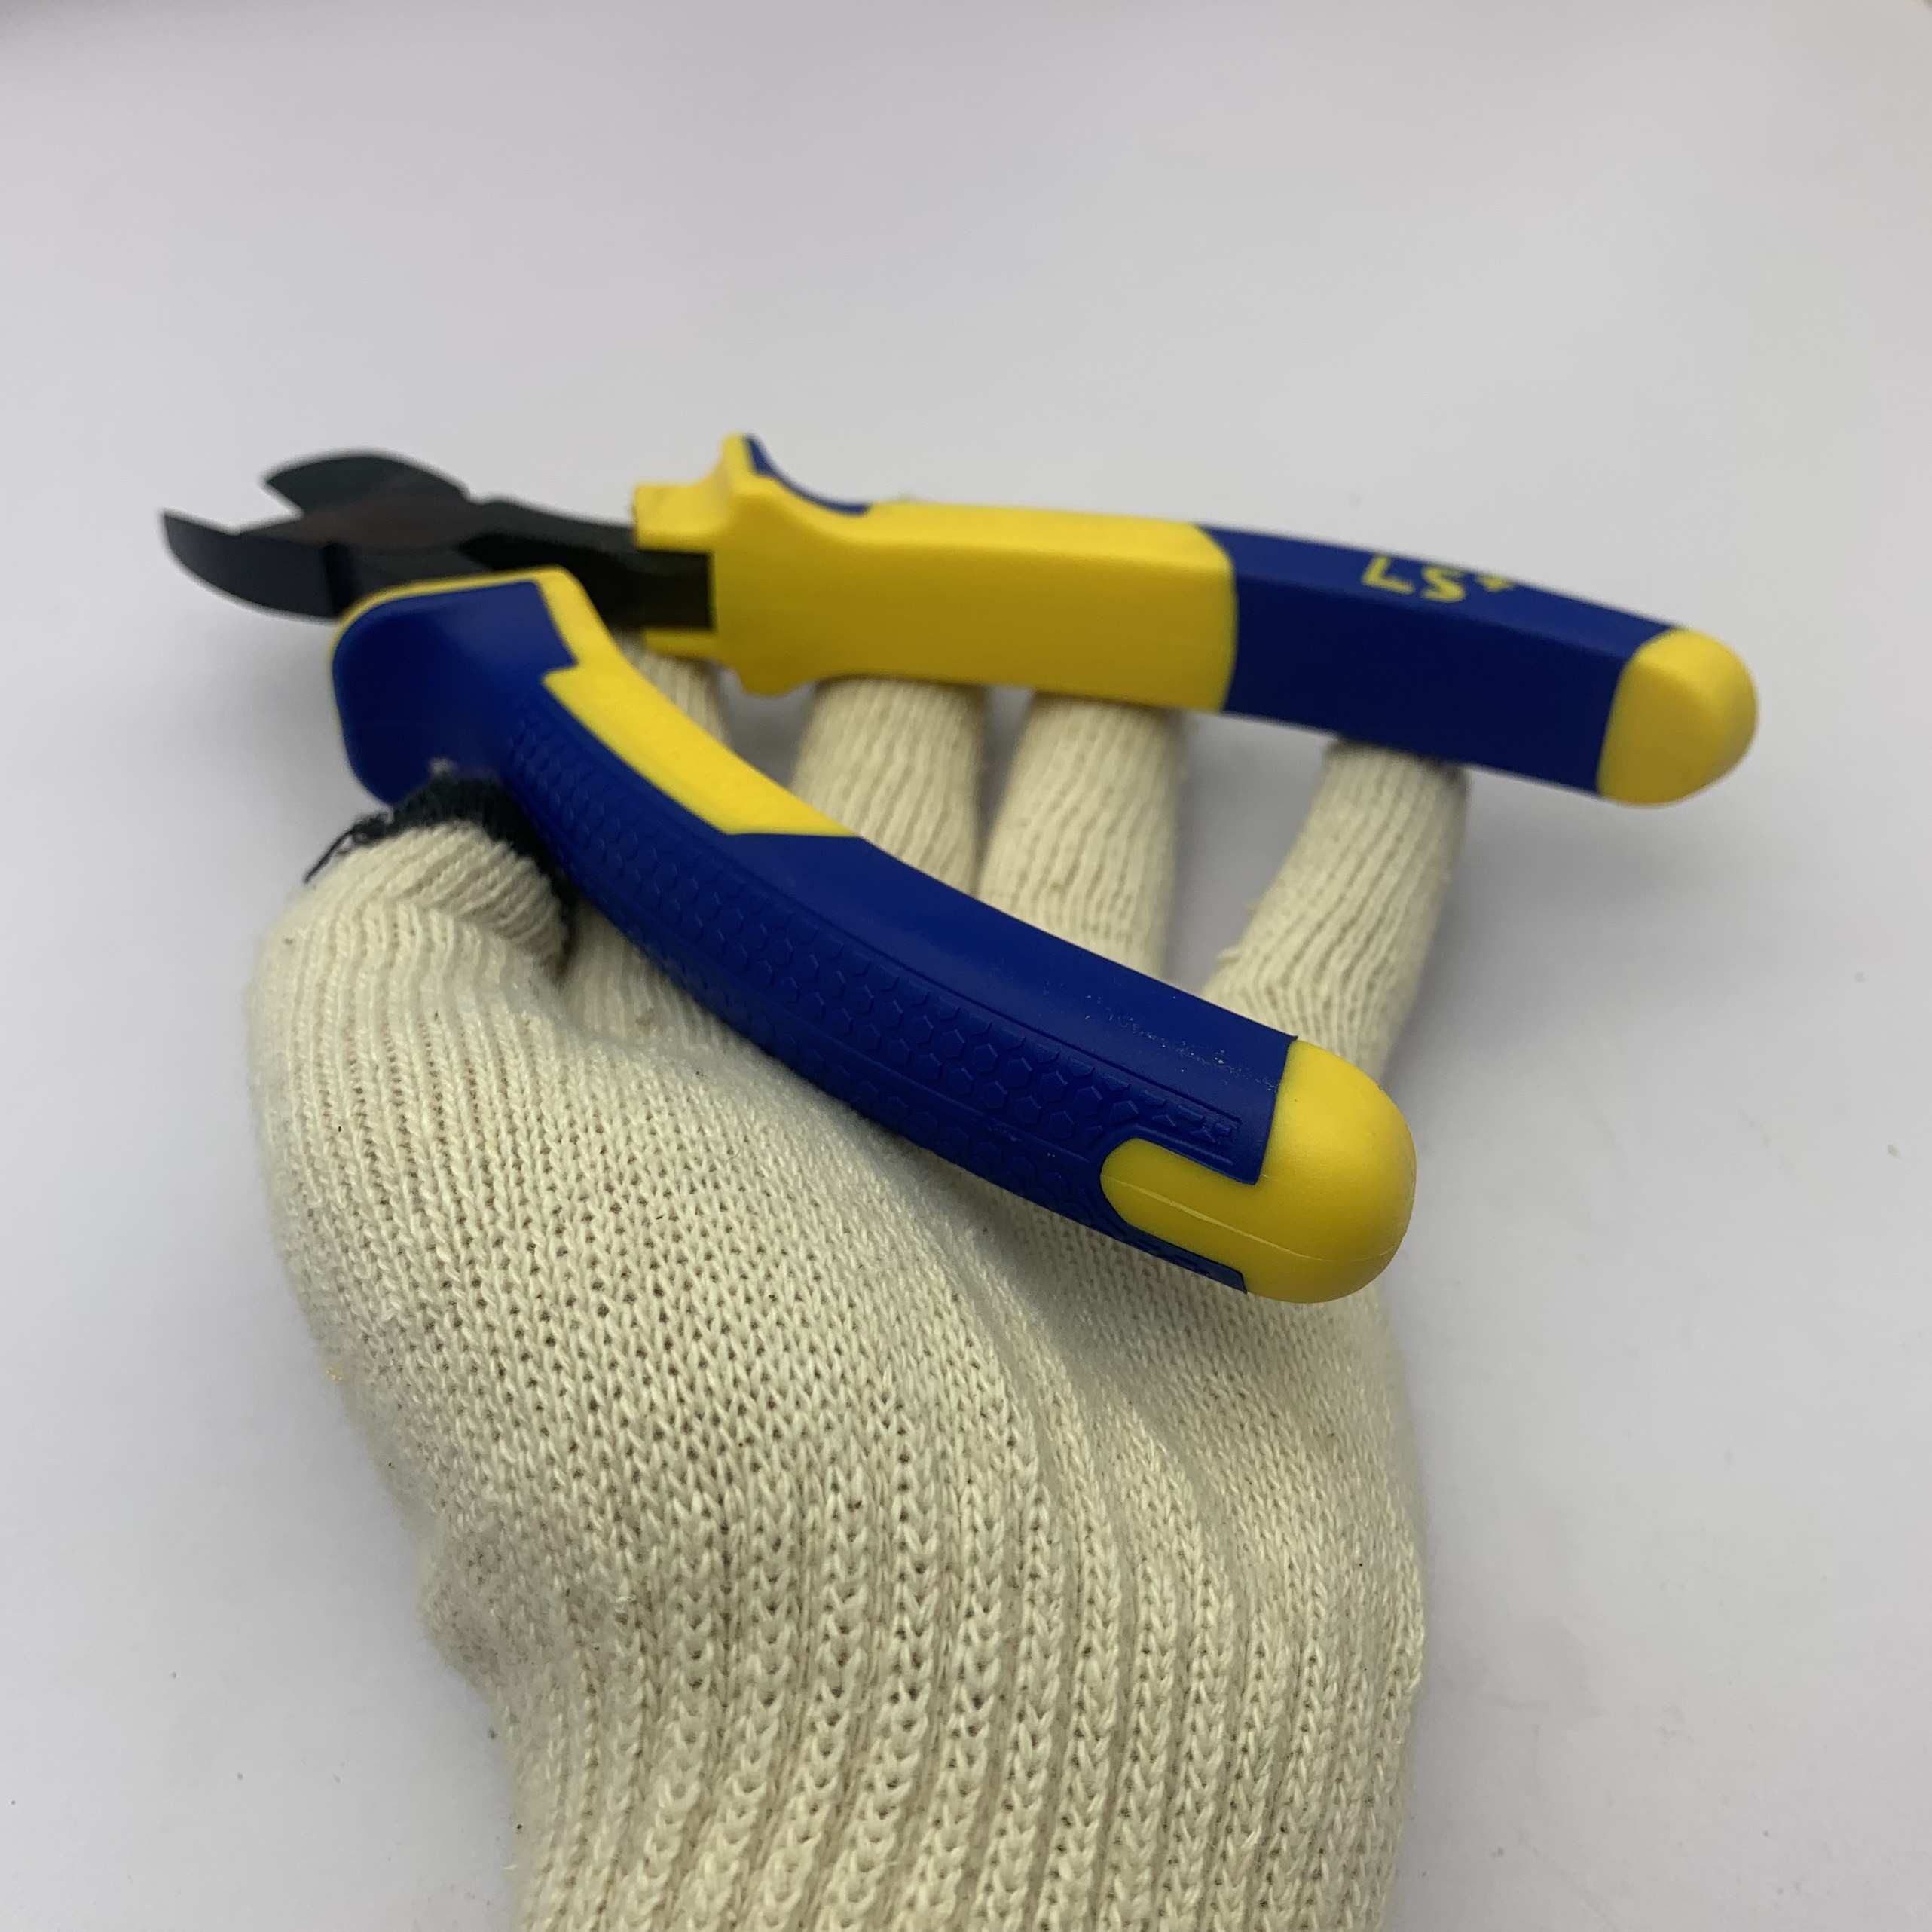 Cán cầm LS310690 được làm từ nhựa TPR có các đường vân tạo ma sát giúp ta dễ dàng sử dụng ngay cả khi đeo găng tay